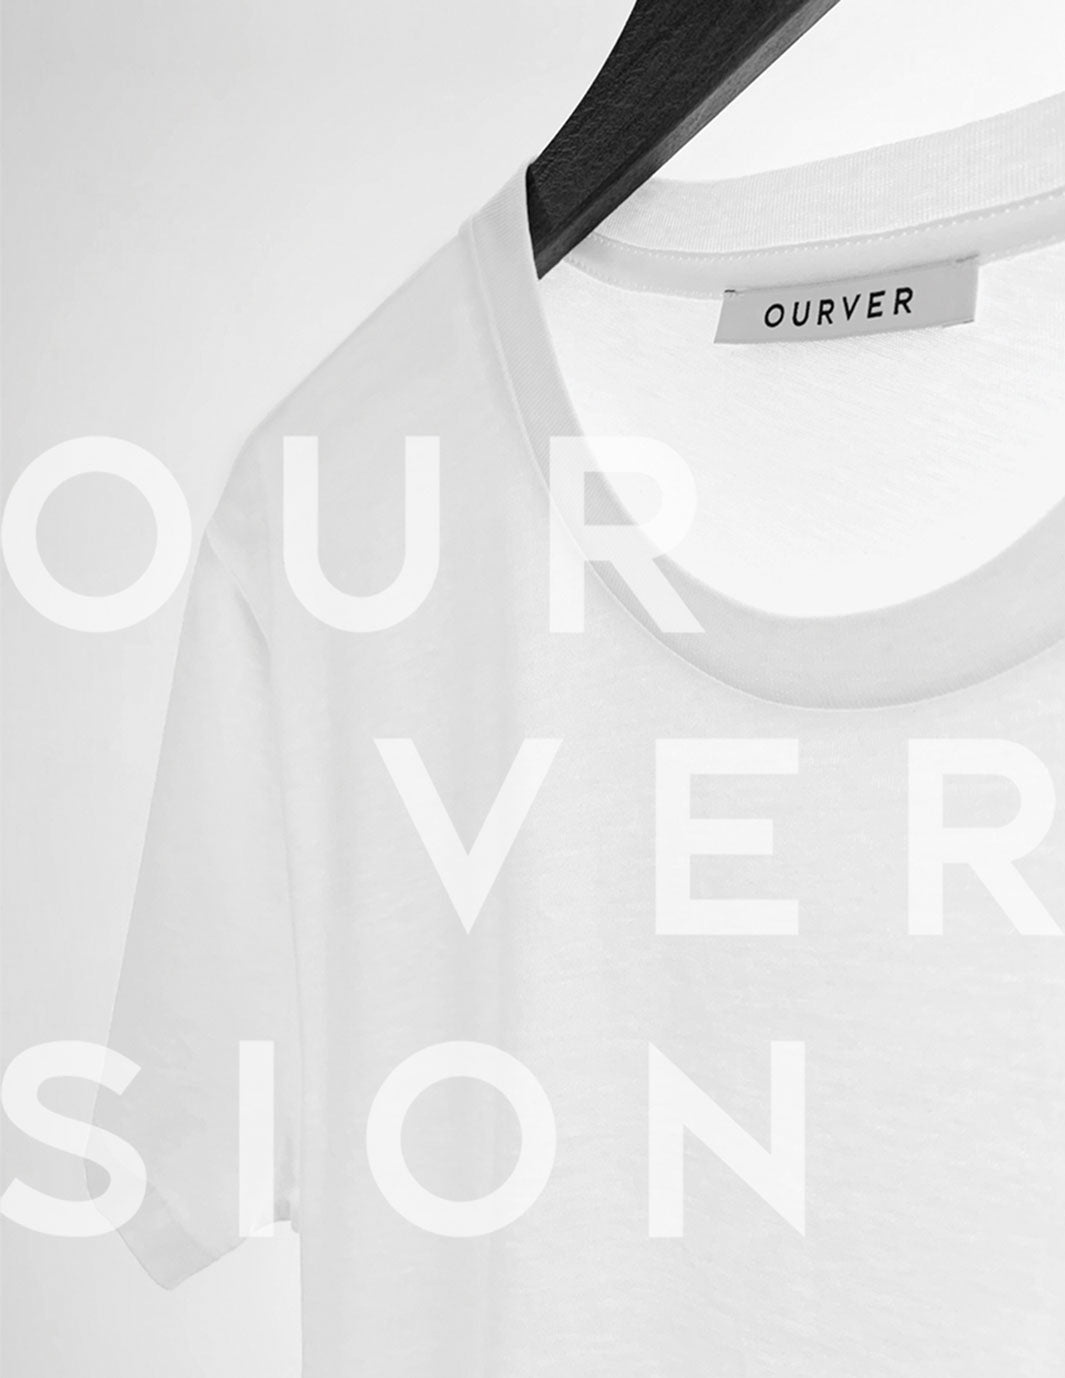 ourver white crew neck t-shirt on hanger